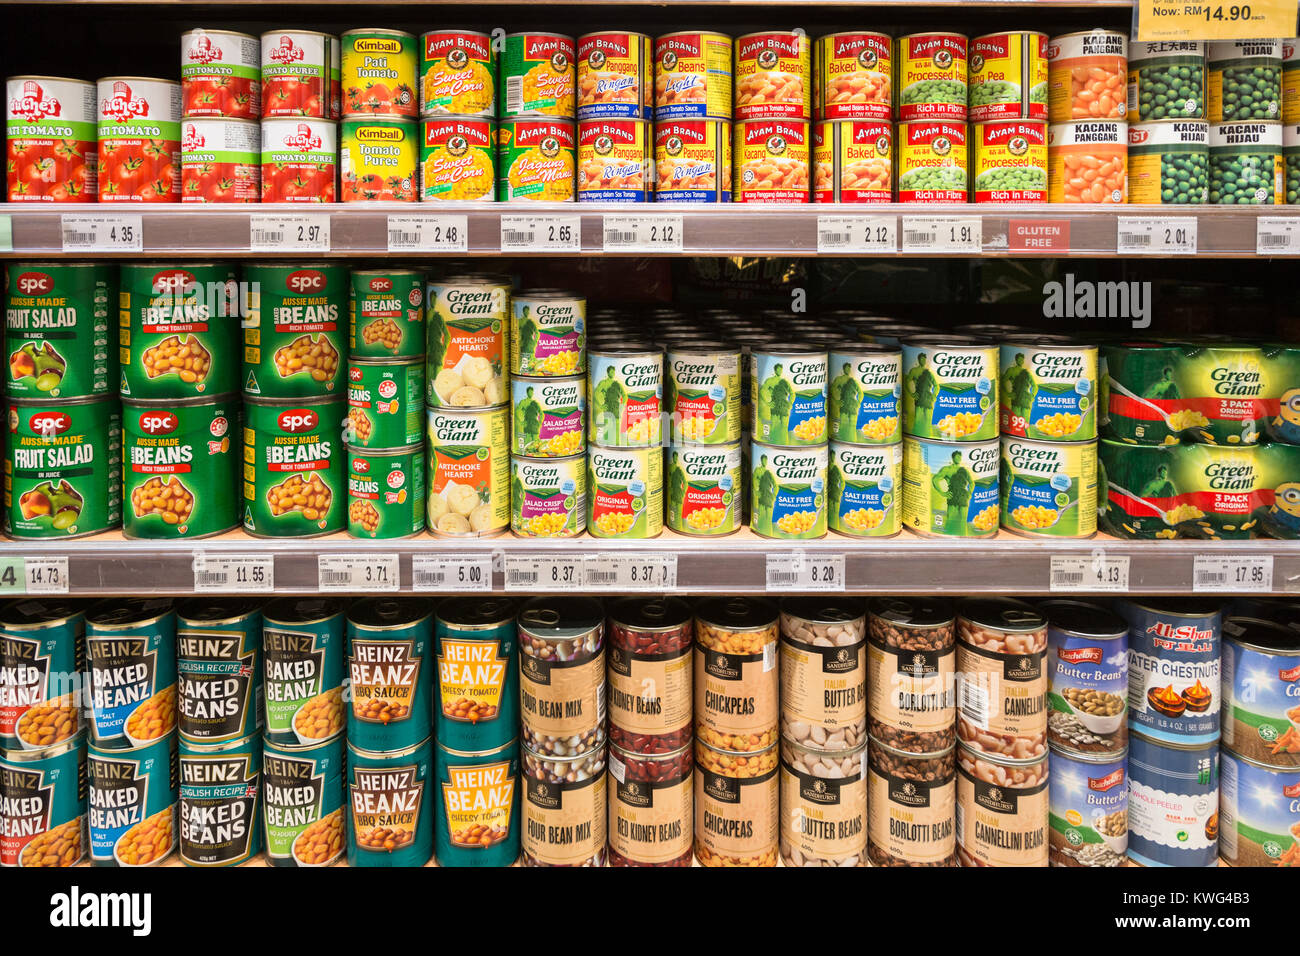 KUALA LUMPUR, Malesia - 22 dicembre 2017: Conserve di fagioli, mais e verdure vengono visualizzati in uno scaffale di supermercato in Malesia Foto Stock